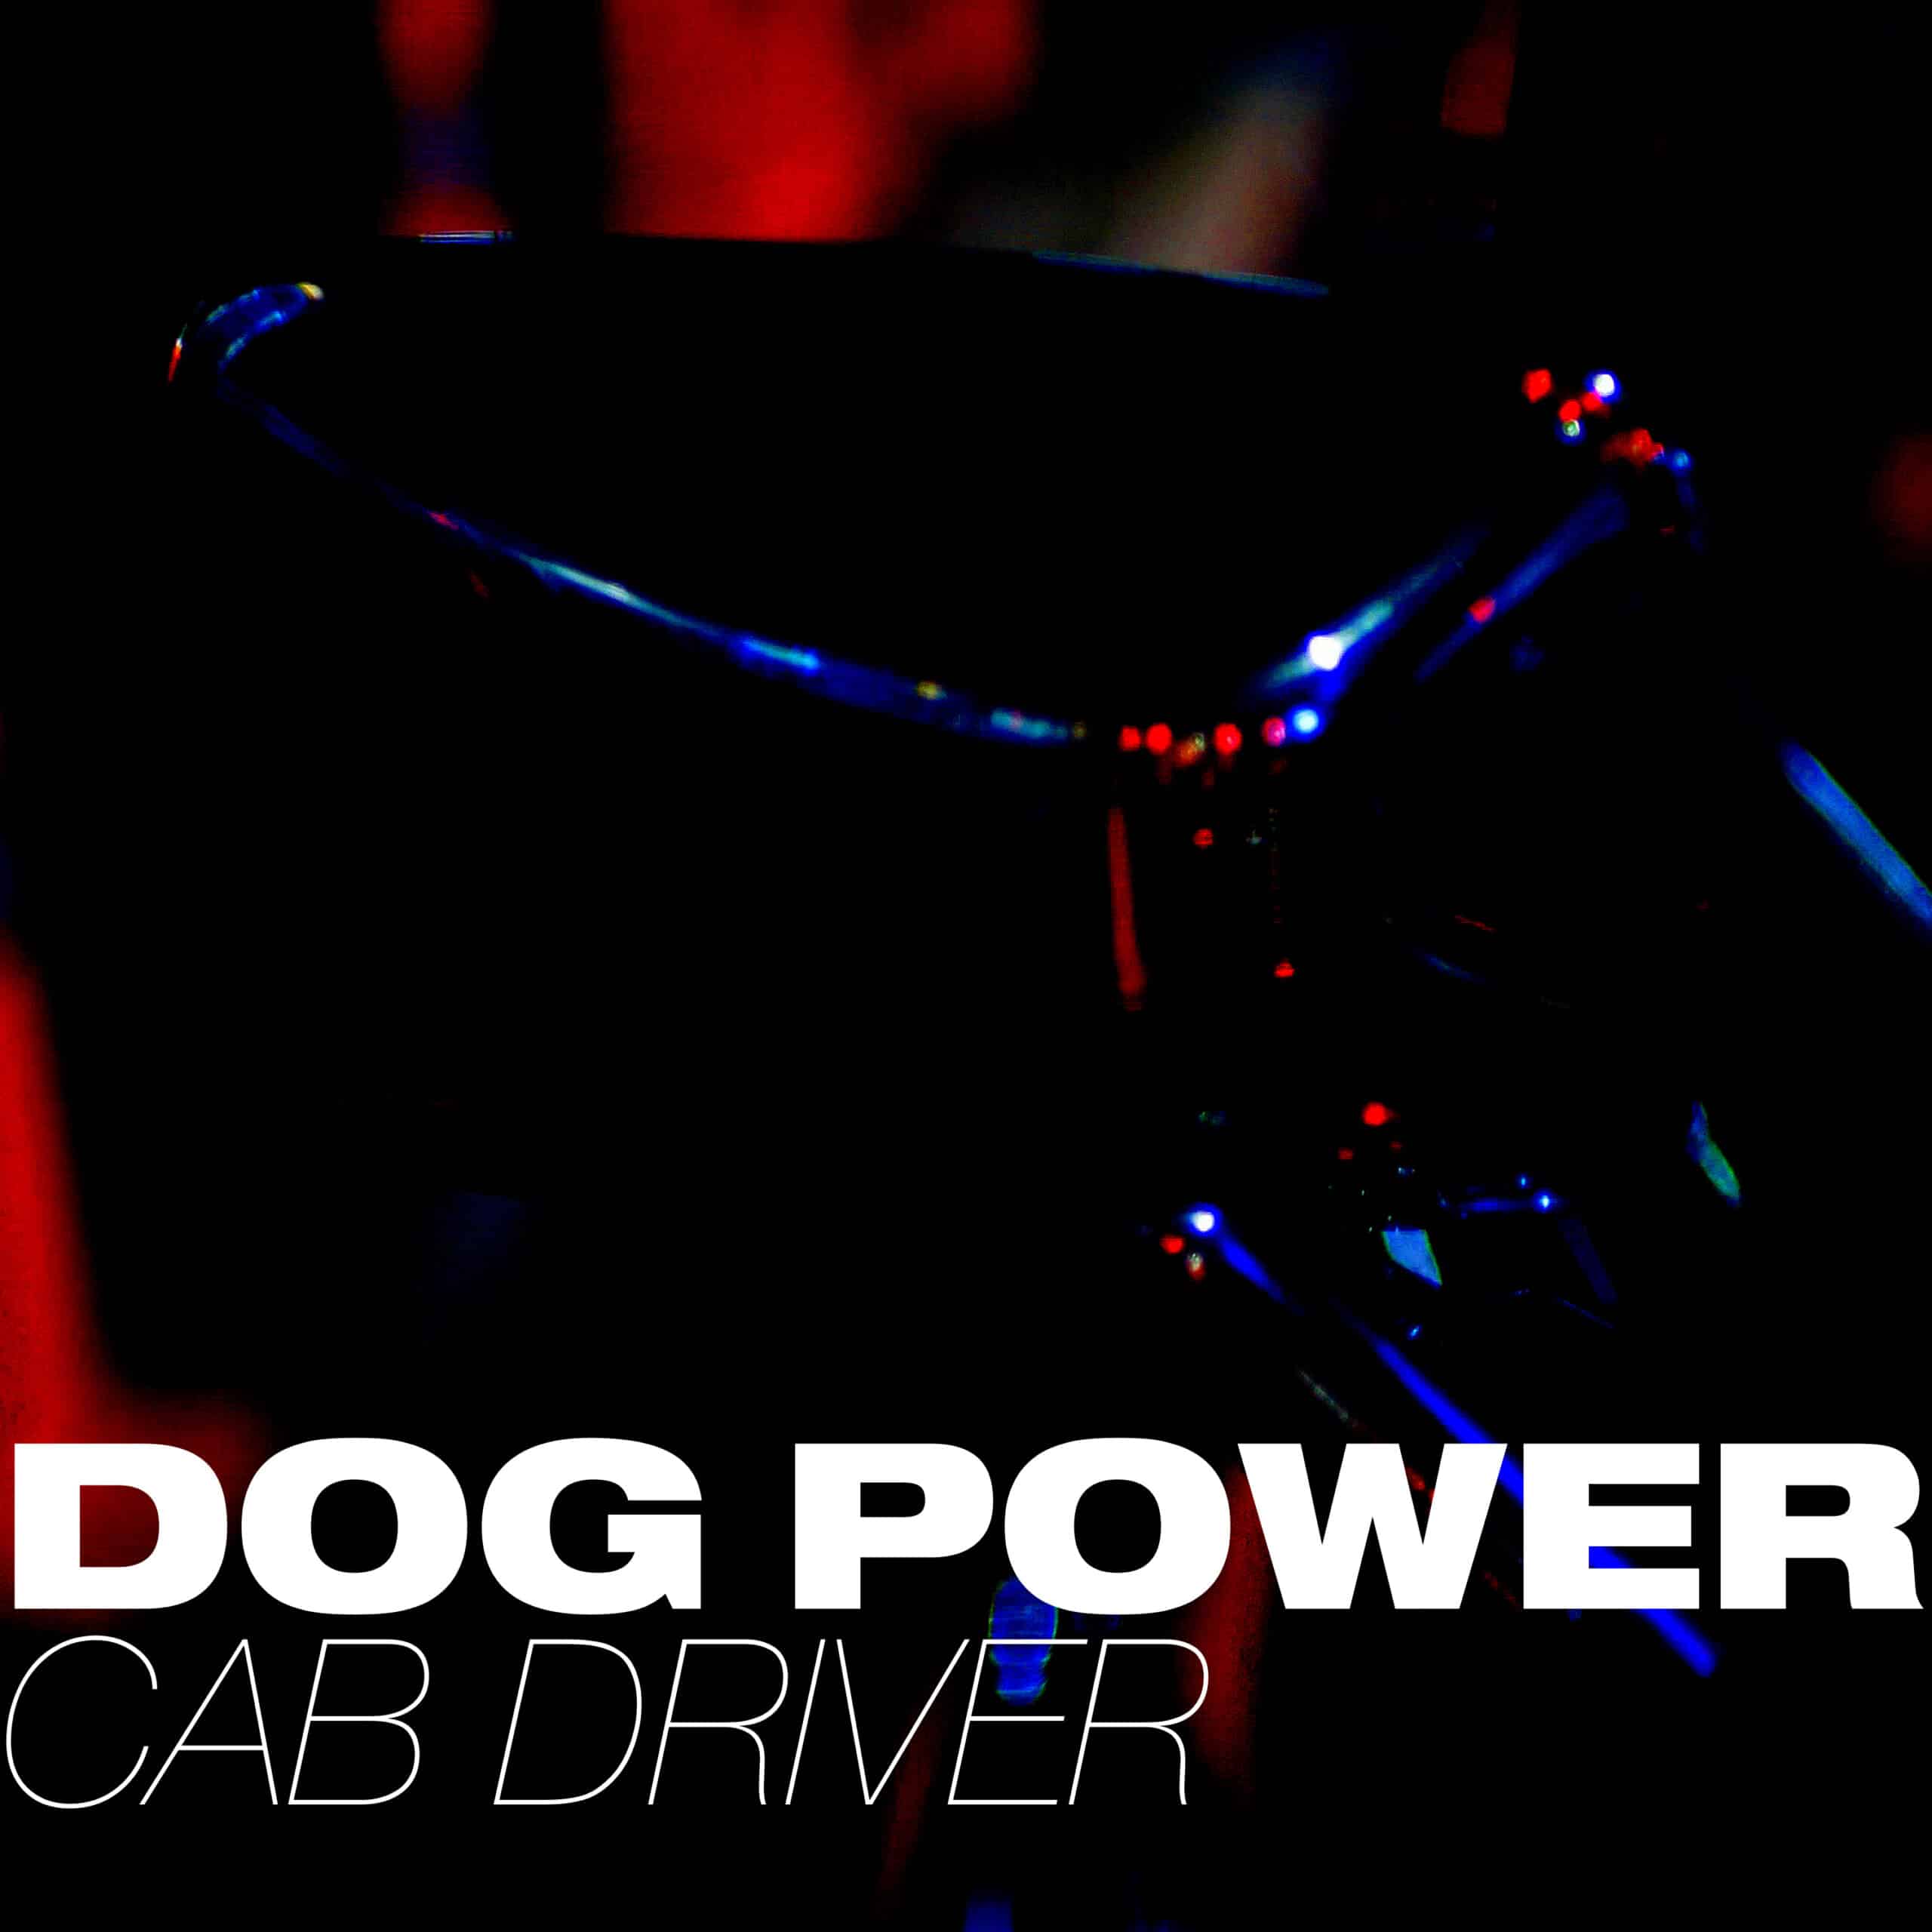 Grupa DOG Power novom pesmom "Cab Driver" najavljuje drugi album 2